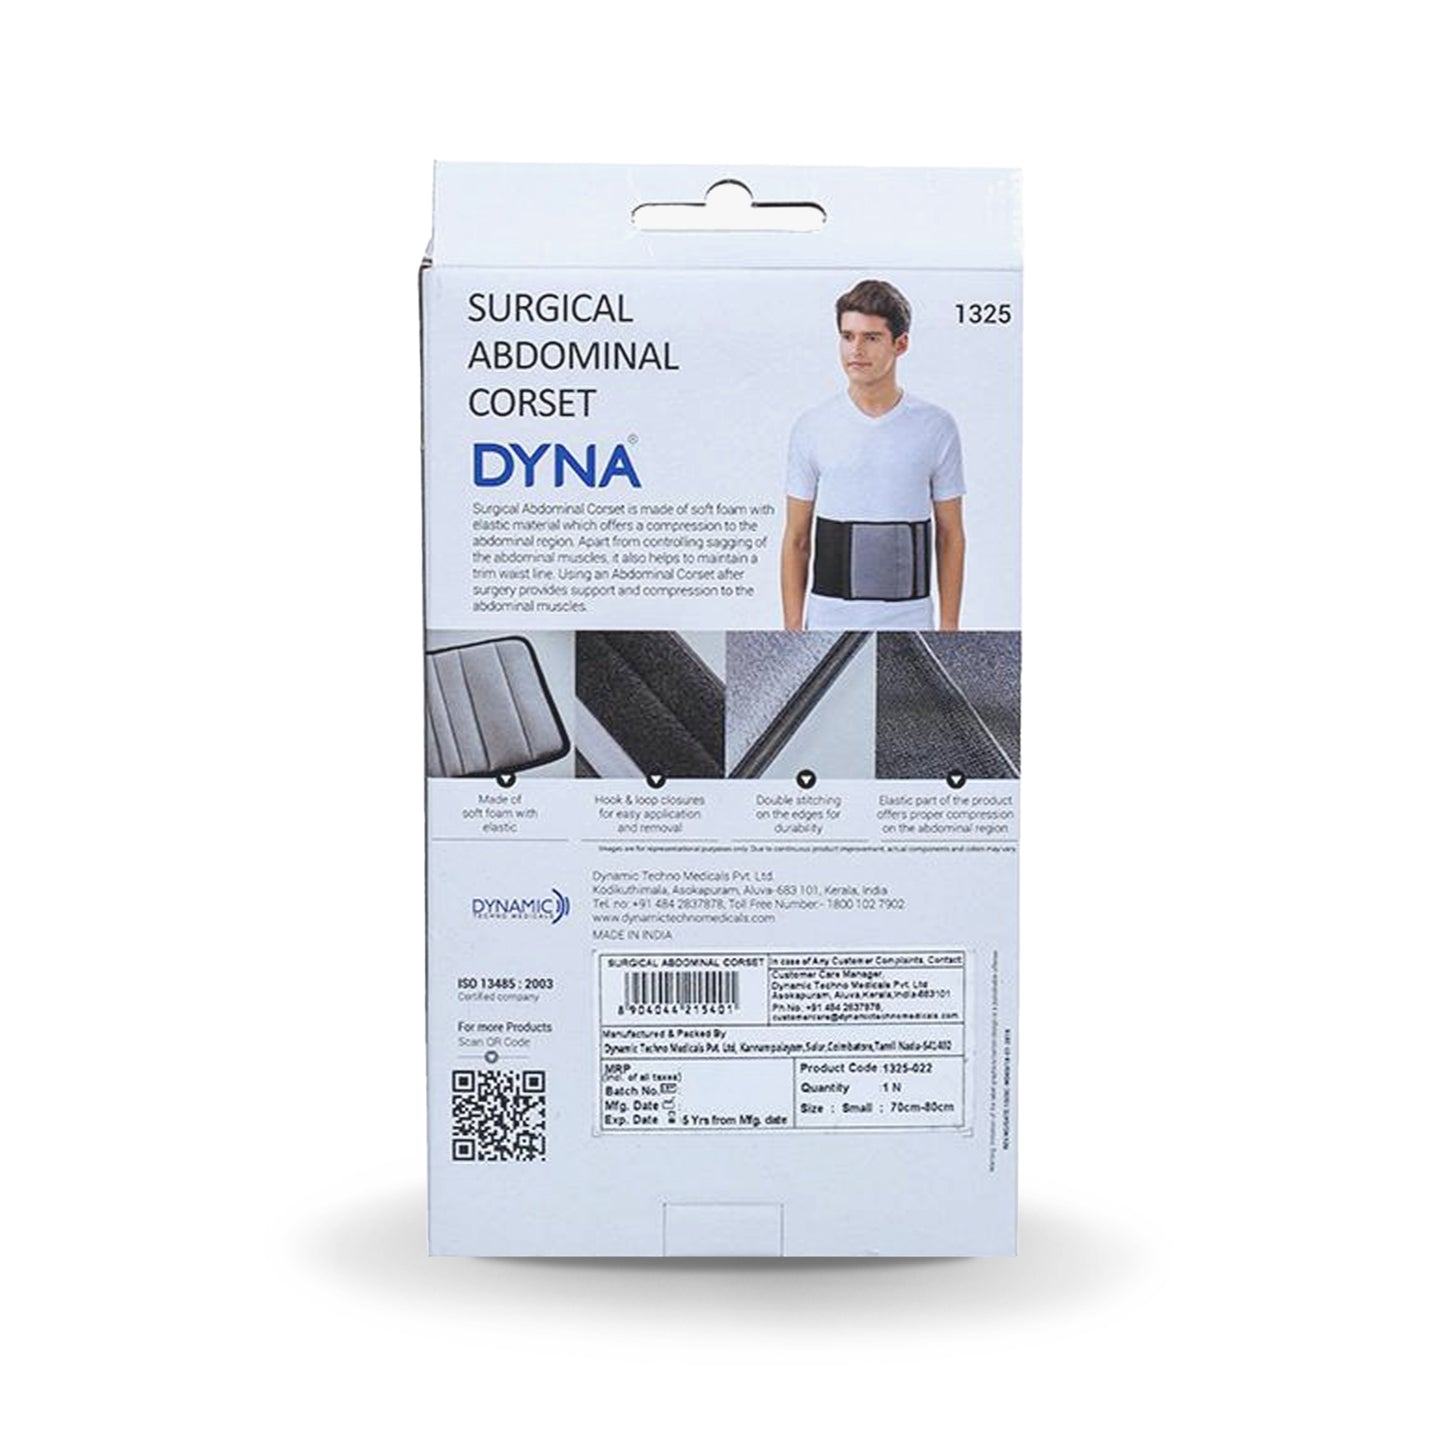 Dyna 外科腹部紧身胸衣 100-110 厘米 - XLarge